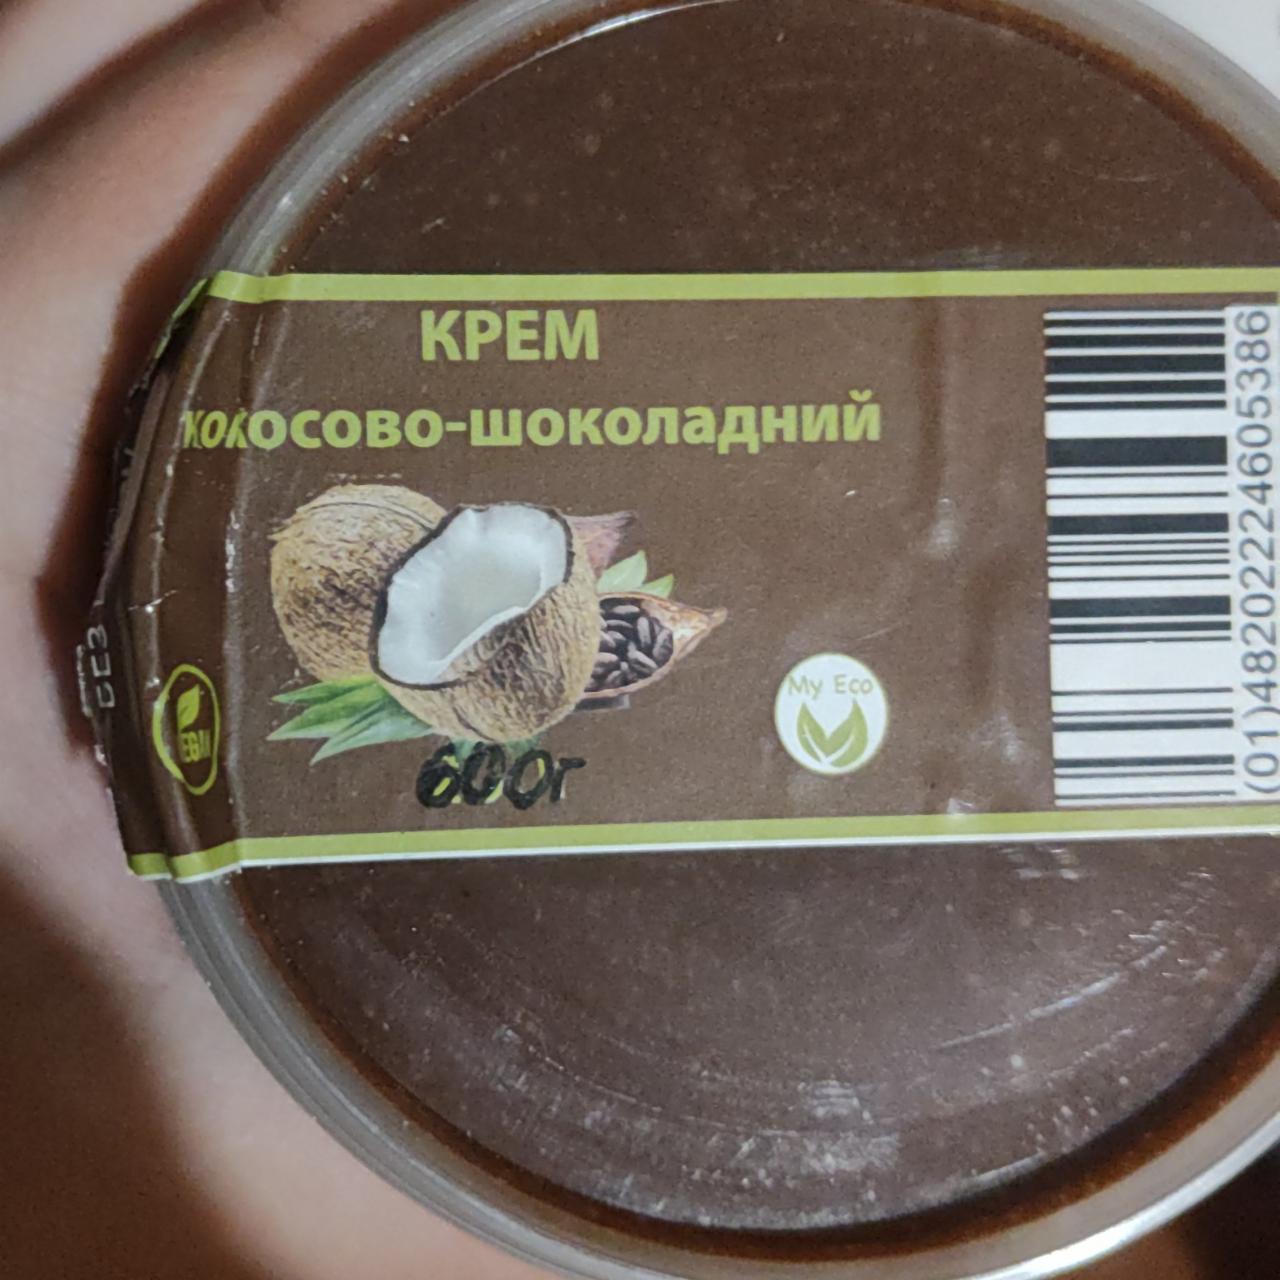 Фото - Крем кокосово-шоколадный My Eco